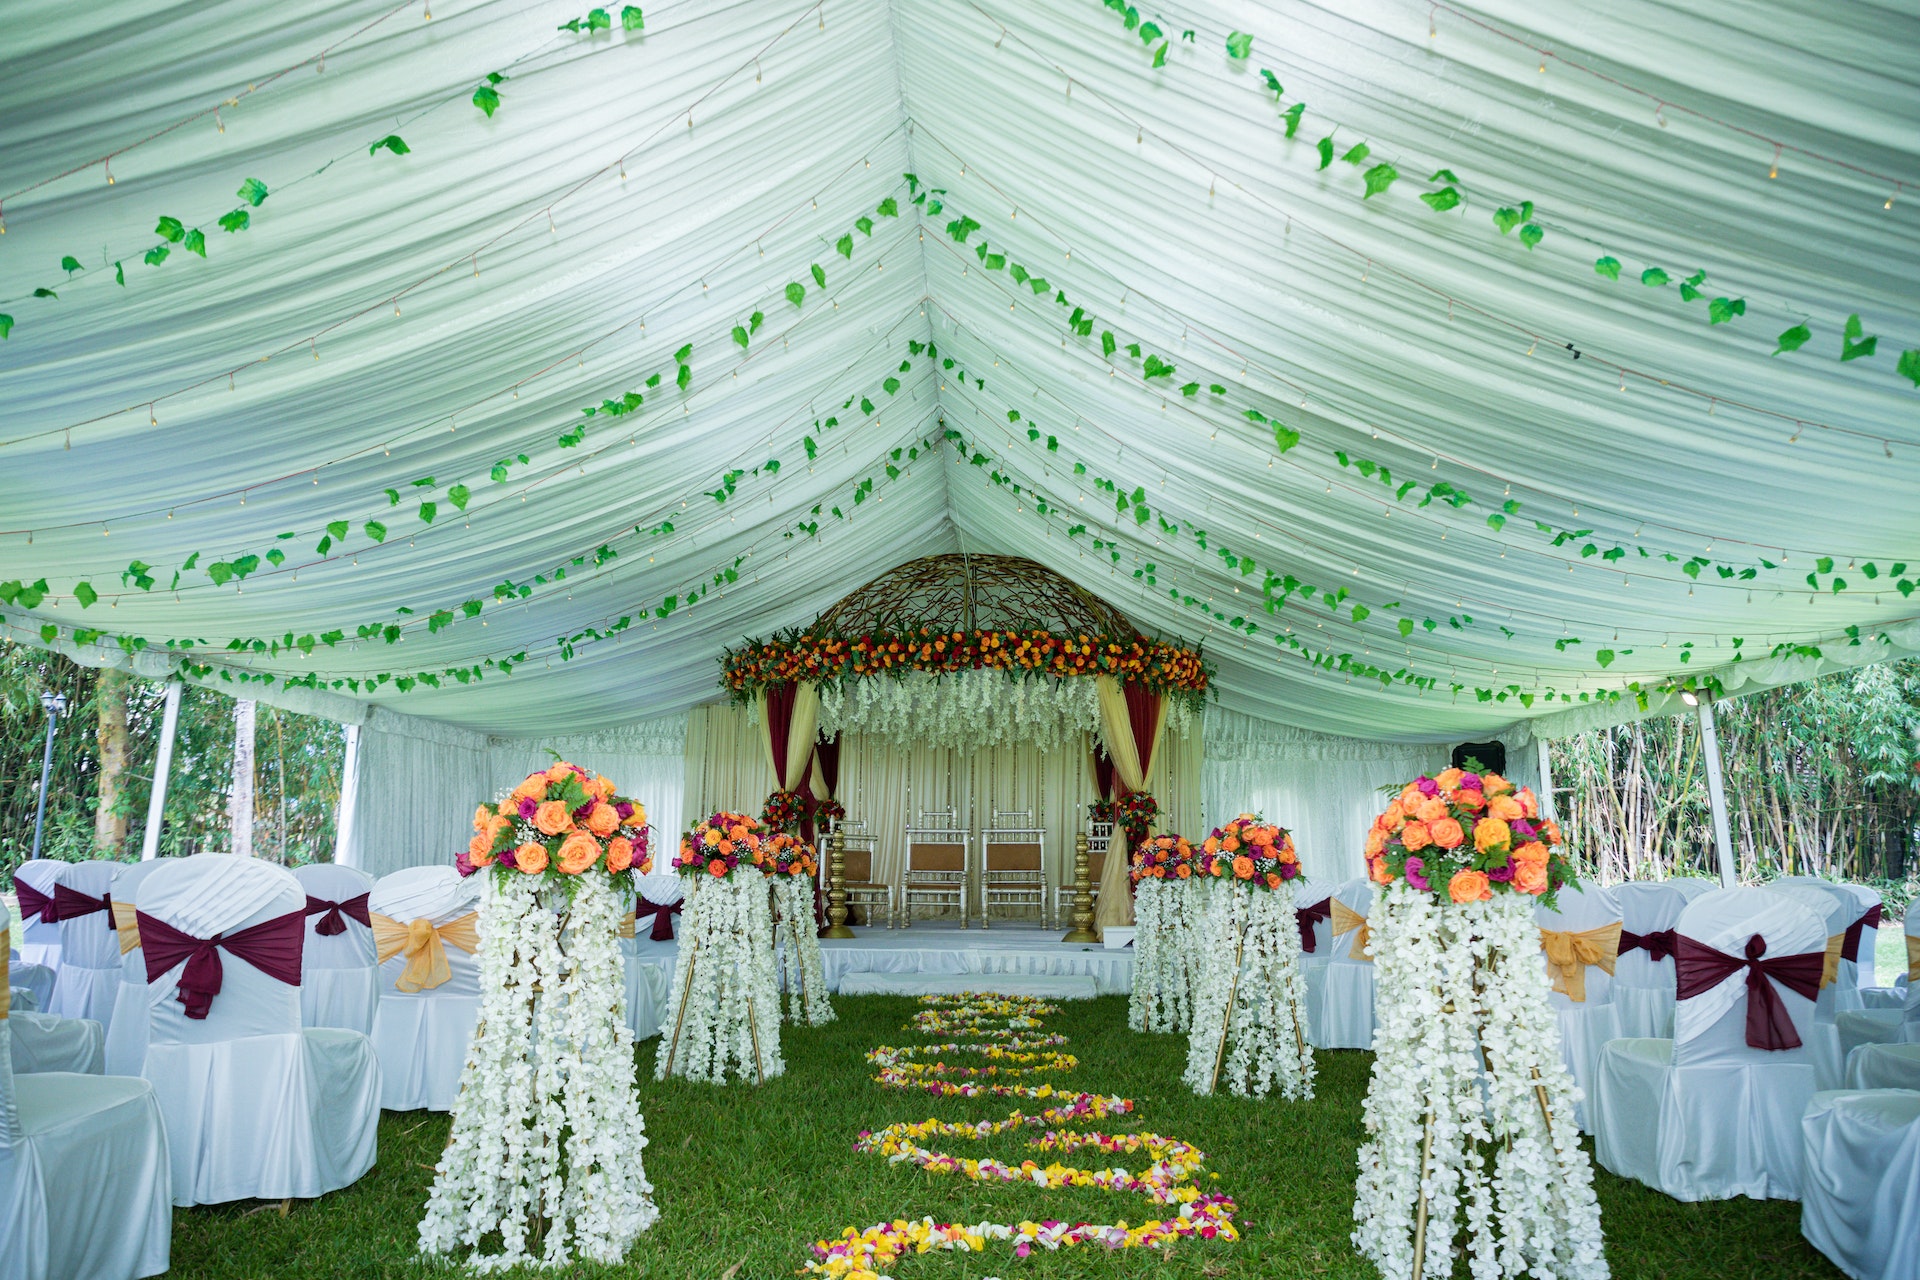 Ein Hochzeitsaufbau in einem Zelt | Quelle: Pexels